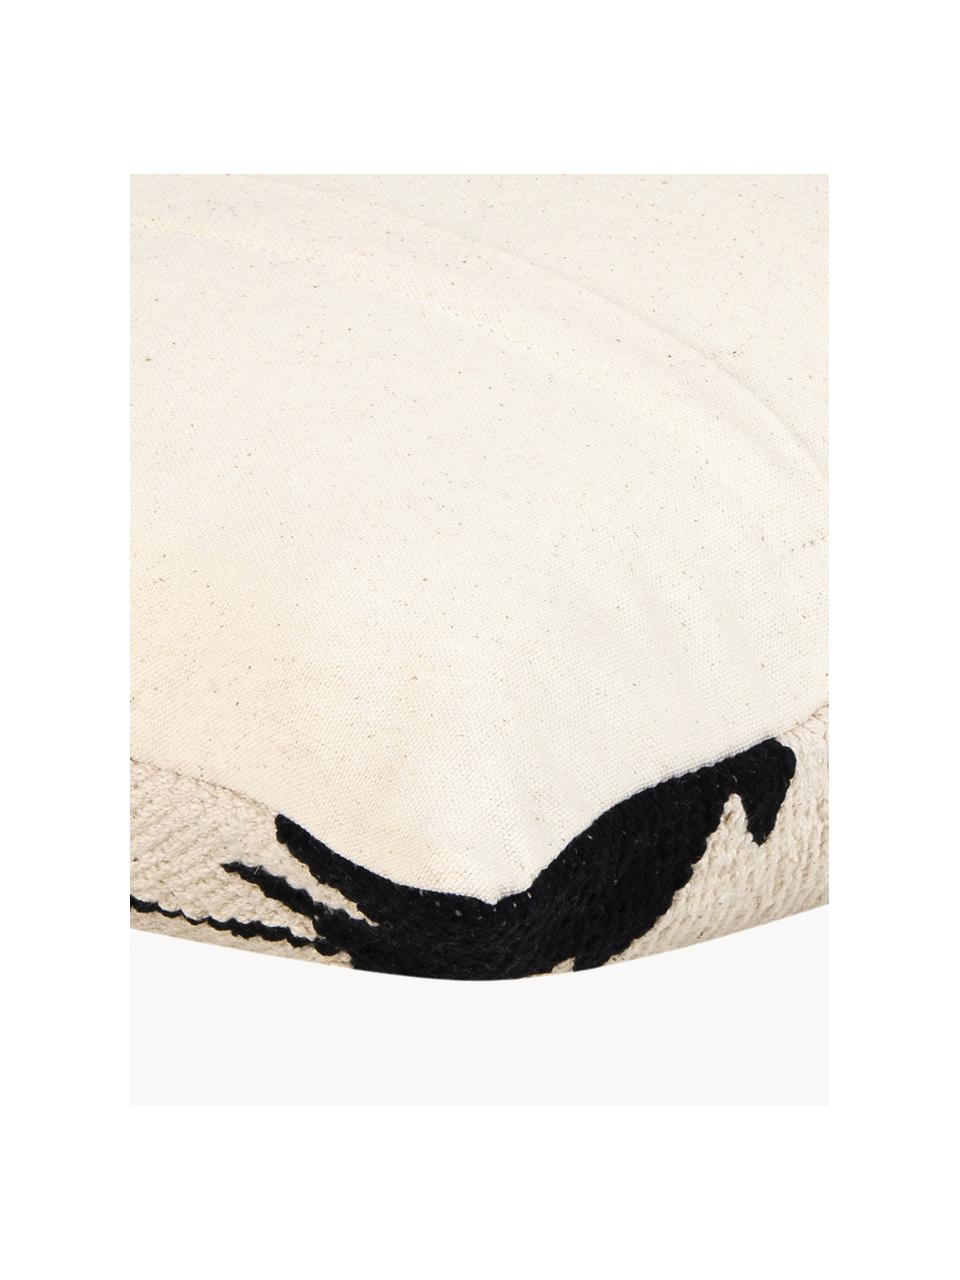 Tkana poszewka na poduszkę Cancun, 100% bawełna, Czarny, jasny beżowy, S 45 x D 45 cm